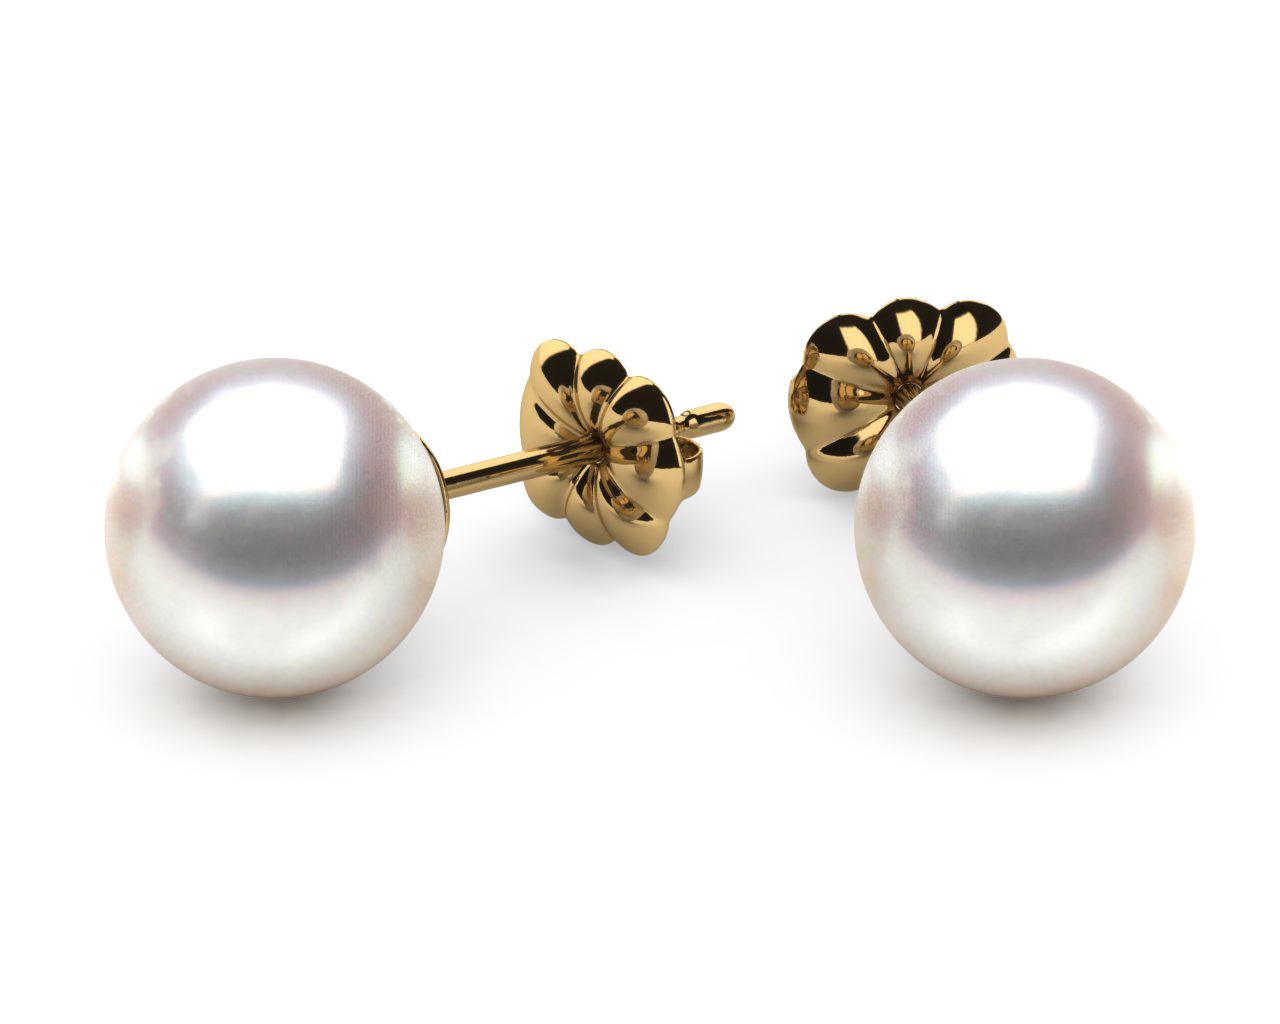 How to Buy Pearl Stud Earrings